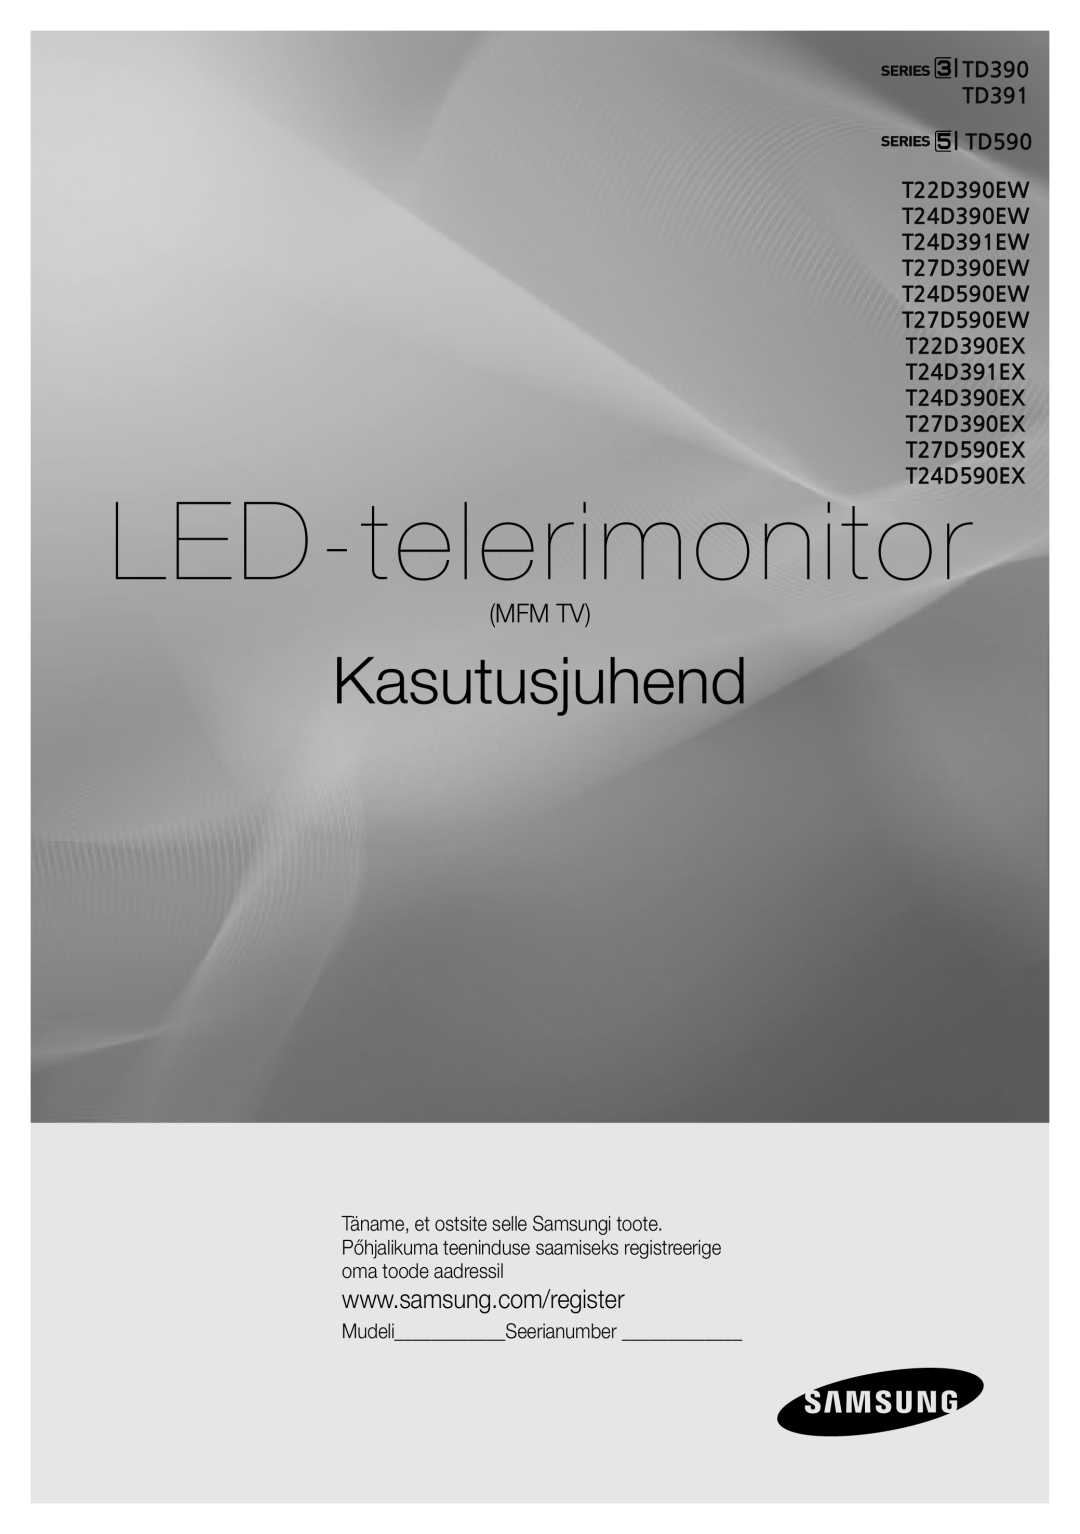 Samsung LT24D391EW/EN, LT27D390EW/EN, LT24D590EW/EN manual Mfm Tv, MudeliSeerianumber, LED-telerimonitor, Kasutusjuhend 